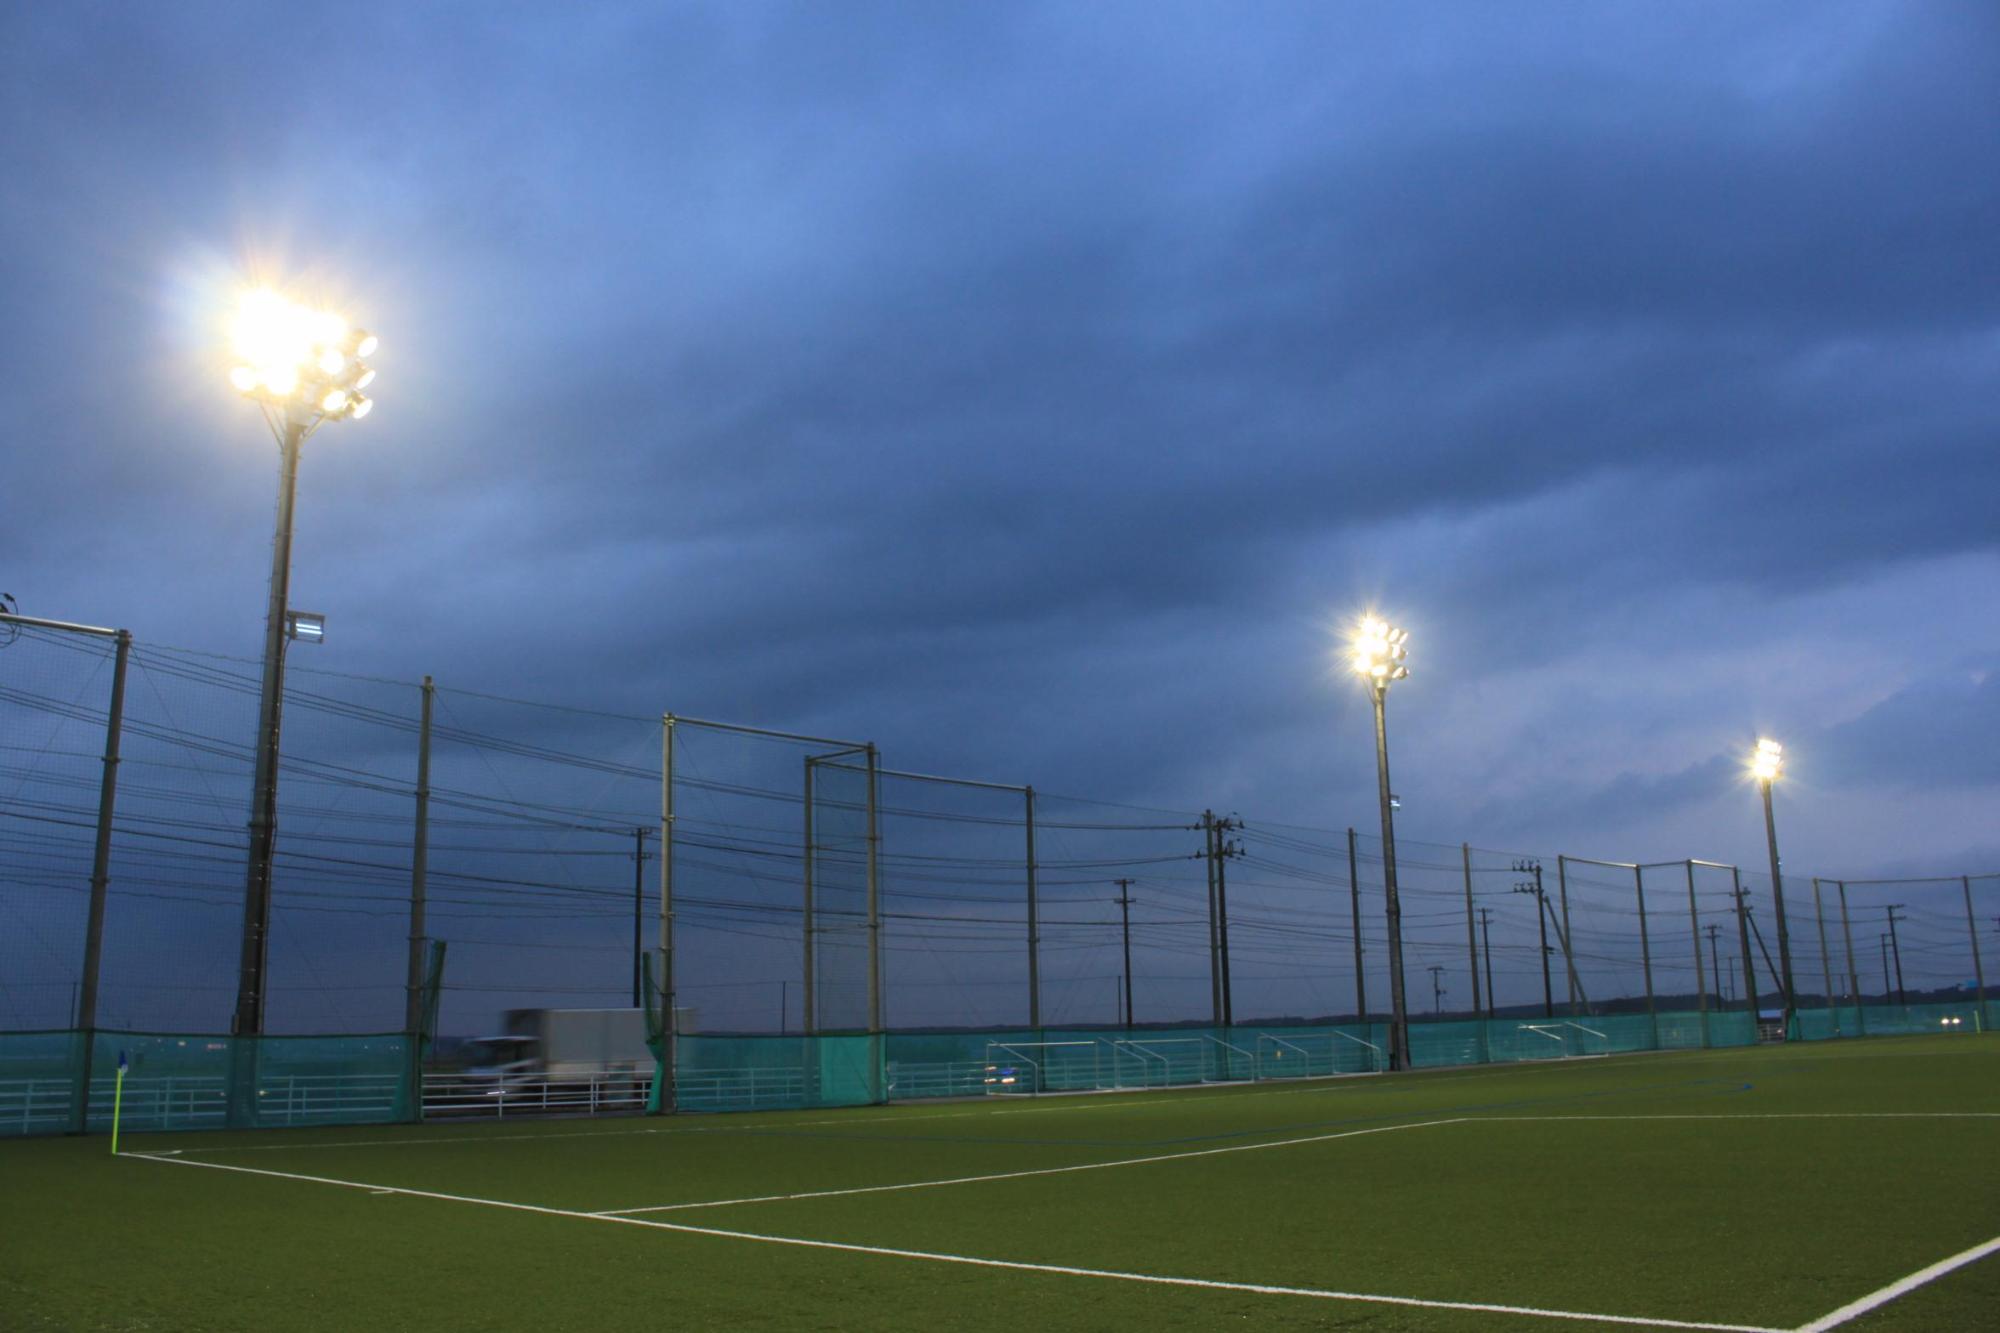 雲が垂れ込め、照明灯が明るく点灯している人工芝球技場のピッチの低い角度からの写真